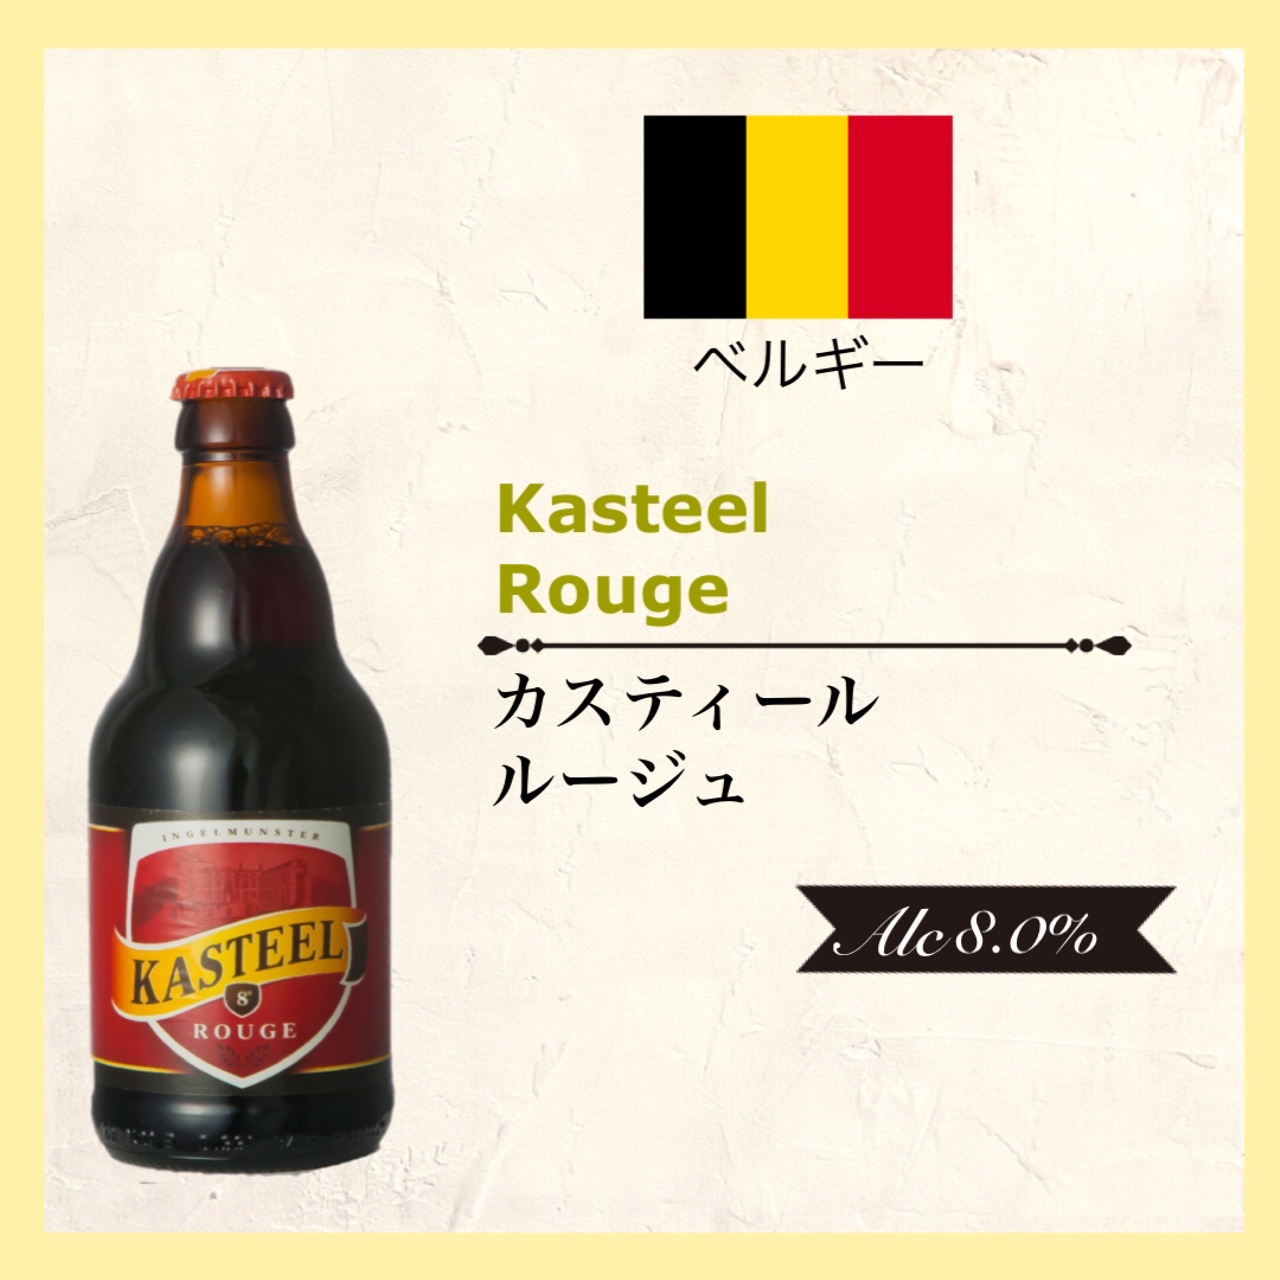 KASTEEL Rouge (ｶｽﾃｨｰﾙ ﾙｰｼﾞｭ) 330ml